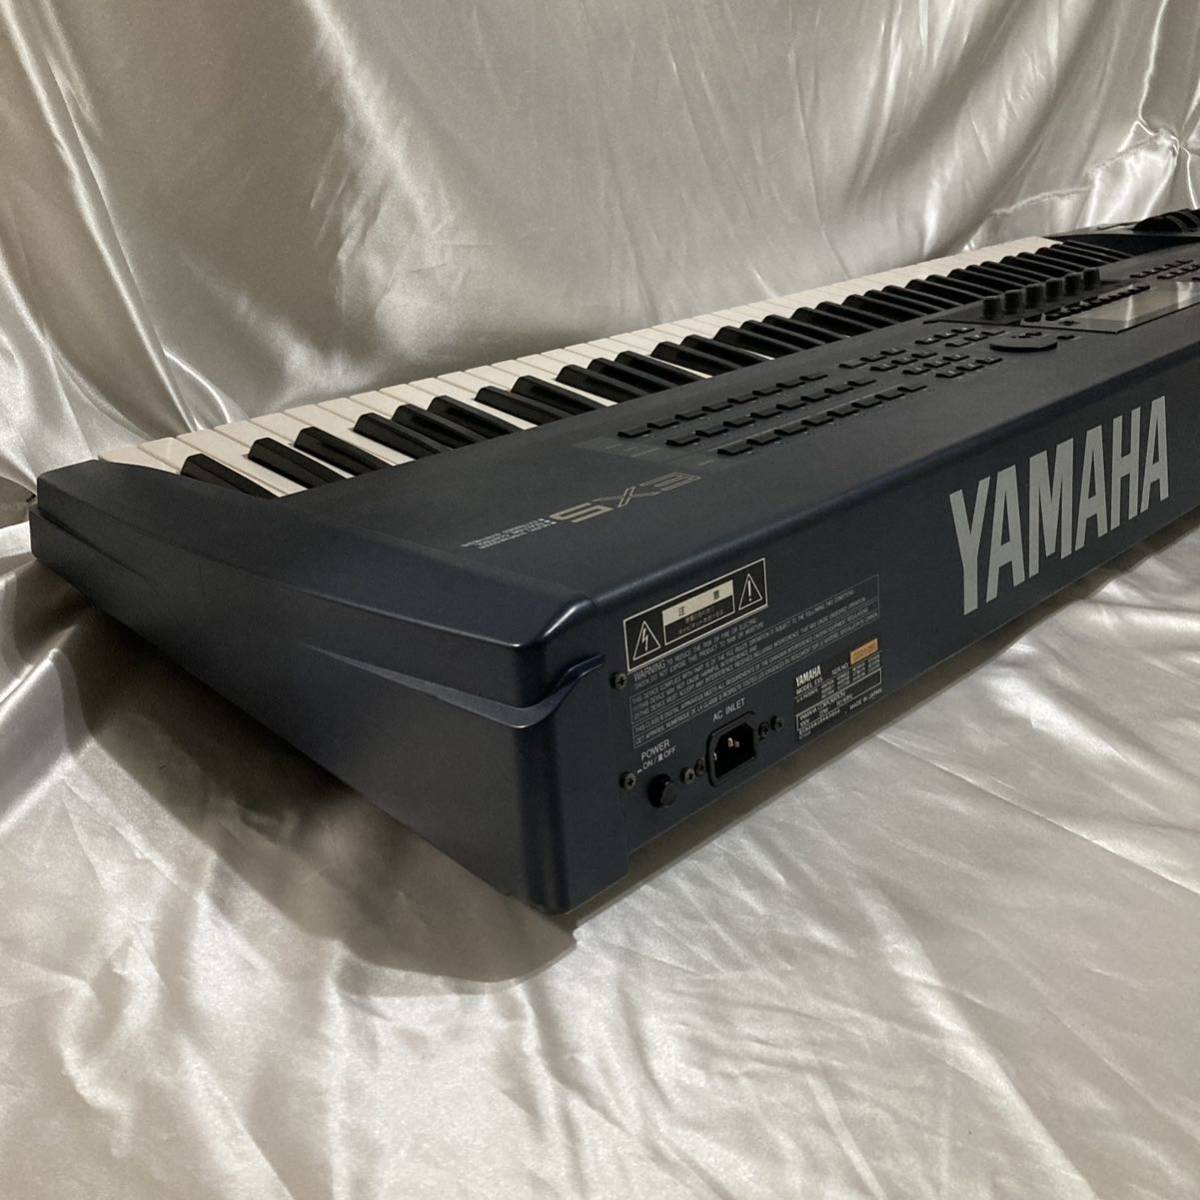 美品 76鍵キーボードシンセサイザー ヤマハ EX5 YAMAHA 電子ピアノ